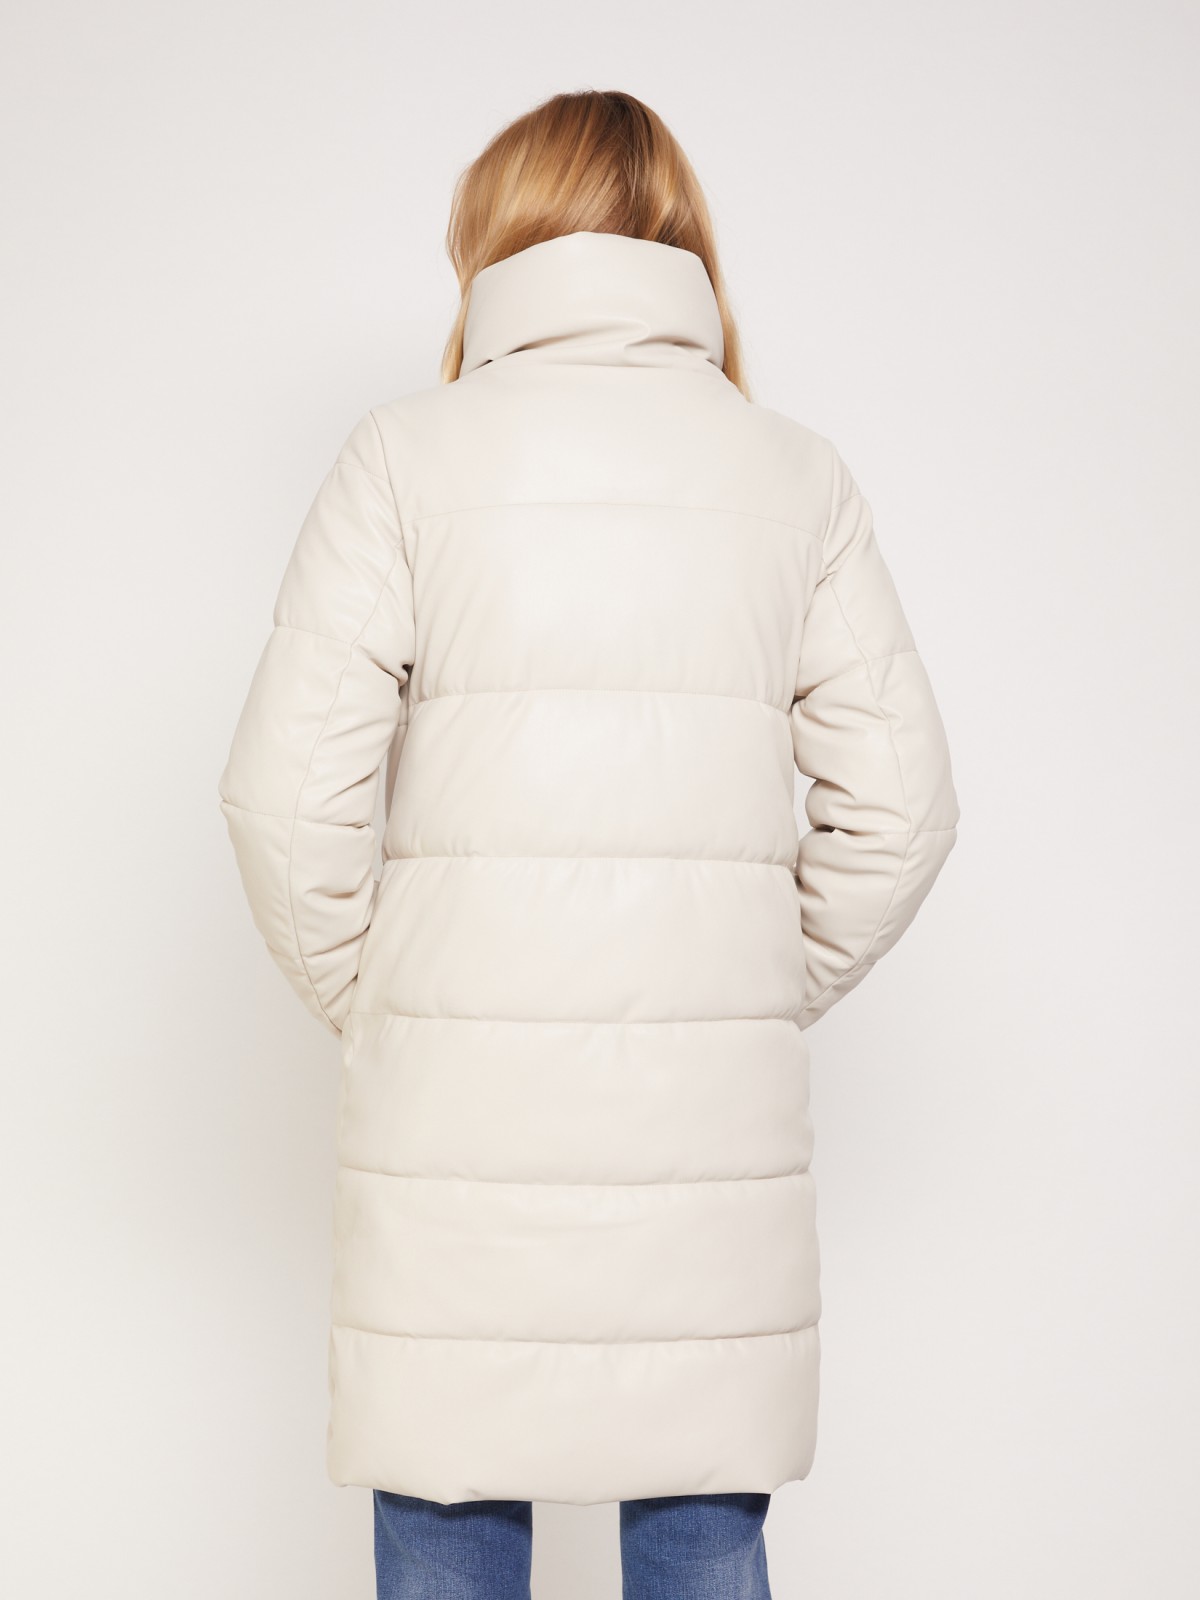 Тёплое пальто из экокожи zolla 021345250184, цвет молоко, размер XS - фото 6